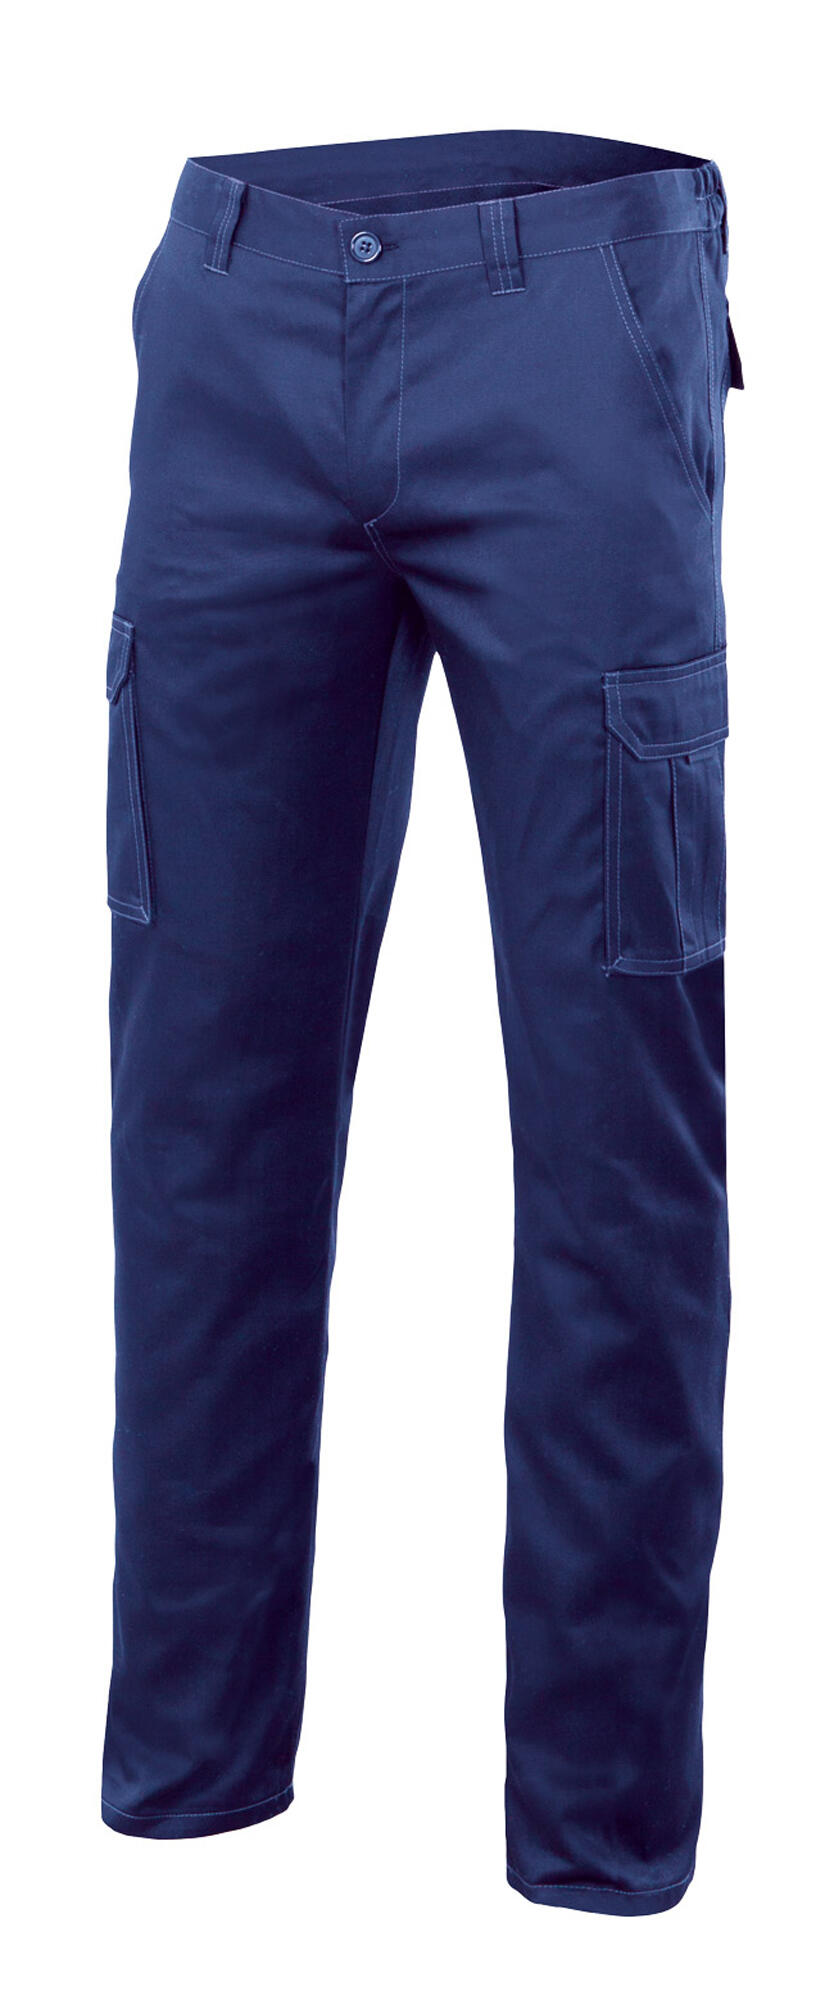 Pantalon de trabajo multibolsillo stretch azulina t 46